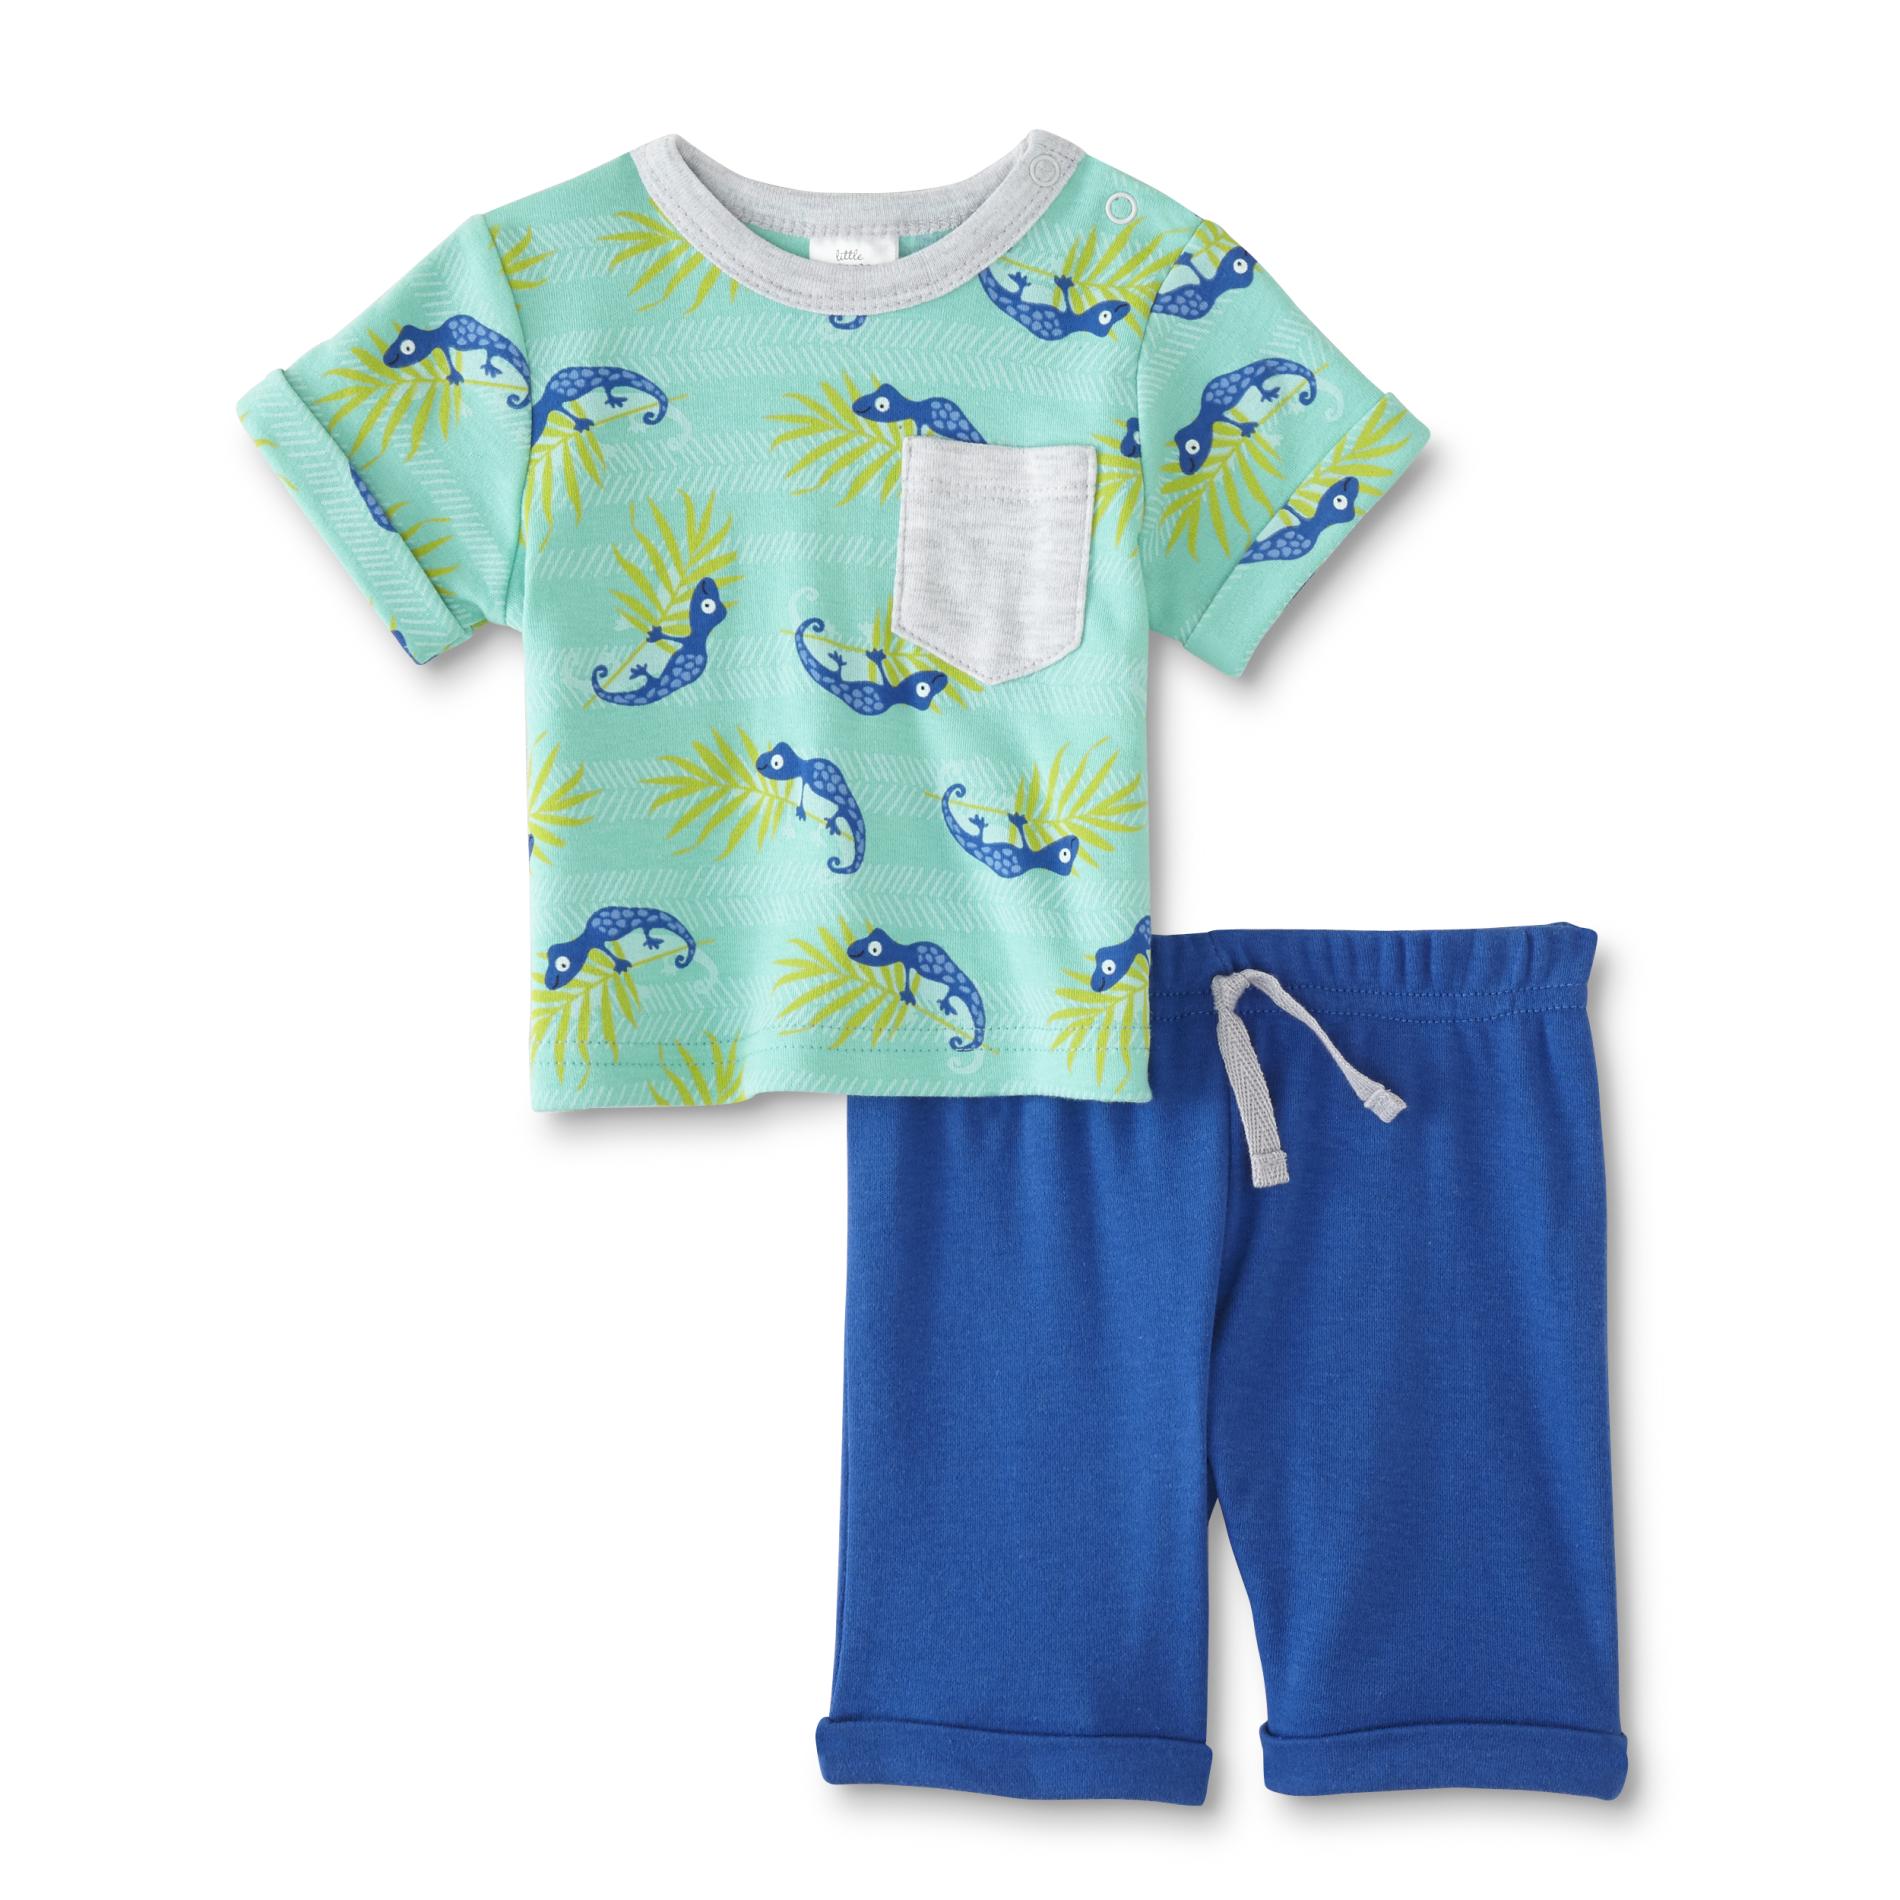 Cudlie Infant Boys' T-Shirt & Shorts - Salamander